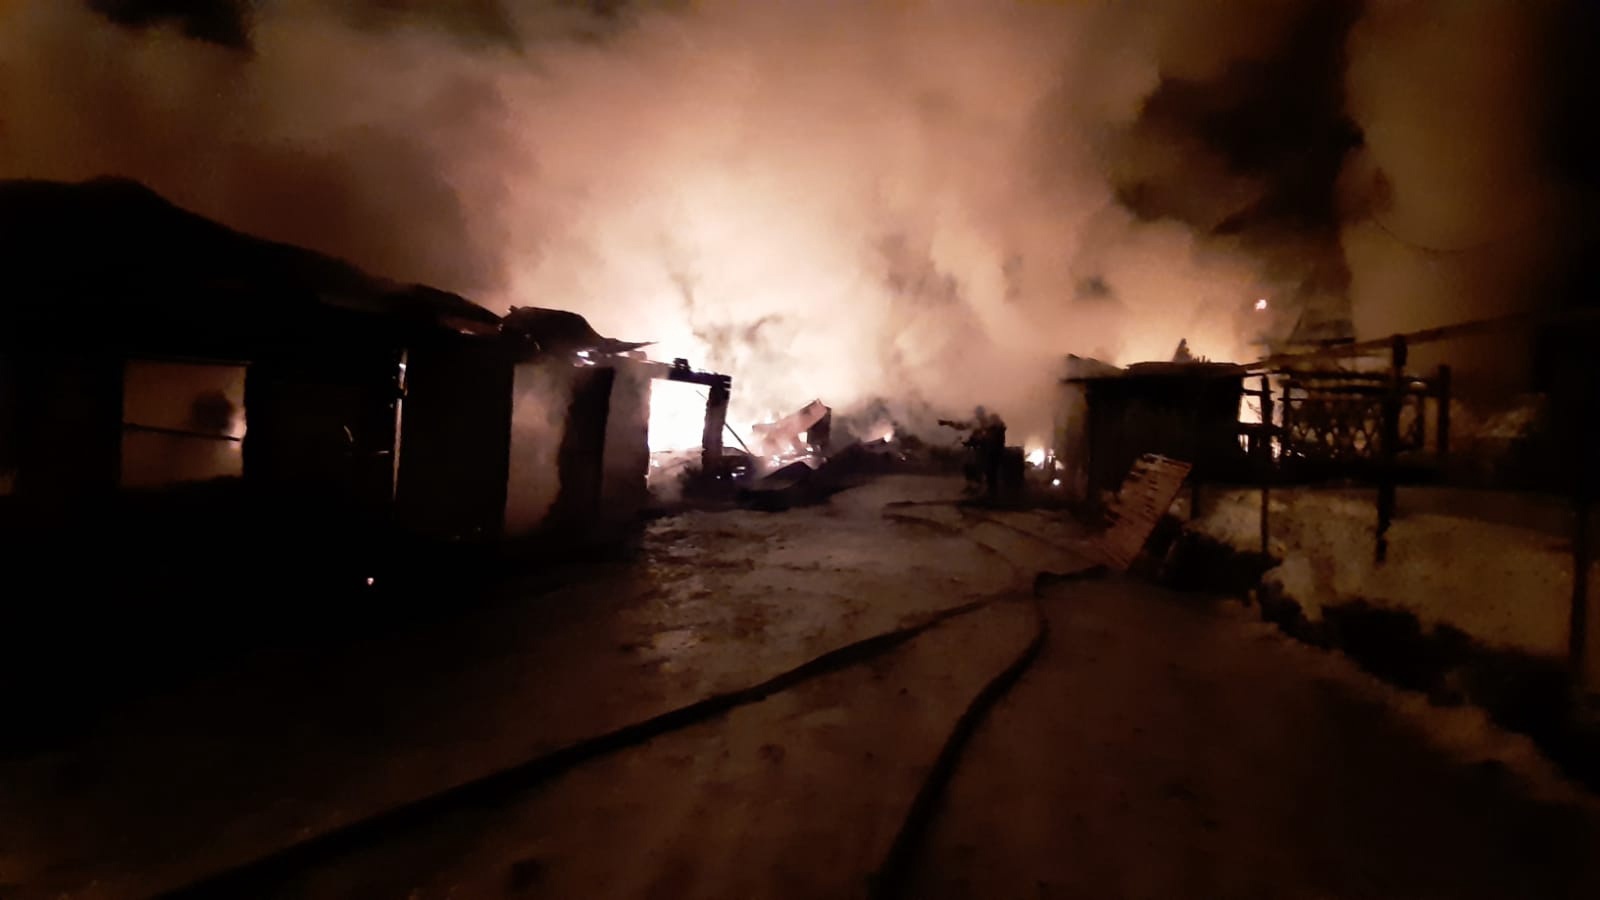 В Кугарчинском районе произошел страшный пожар: СГОРЕЛО ВСЁ, ПОСТРАДАЛ МУЖЧИНА